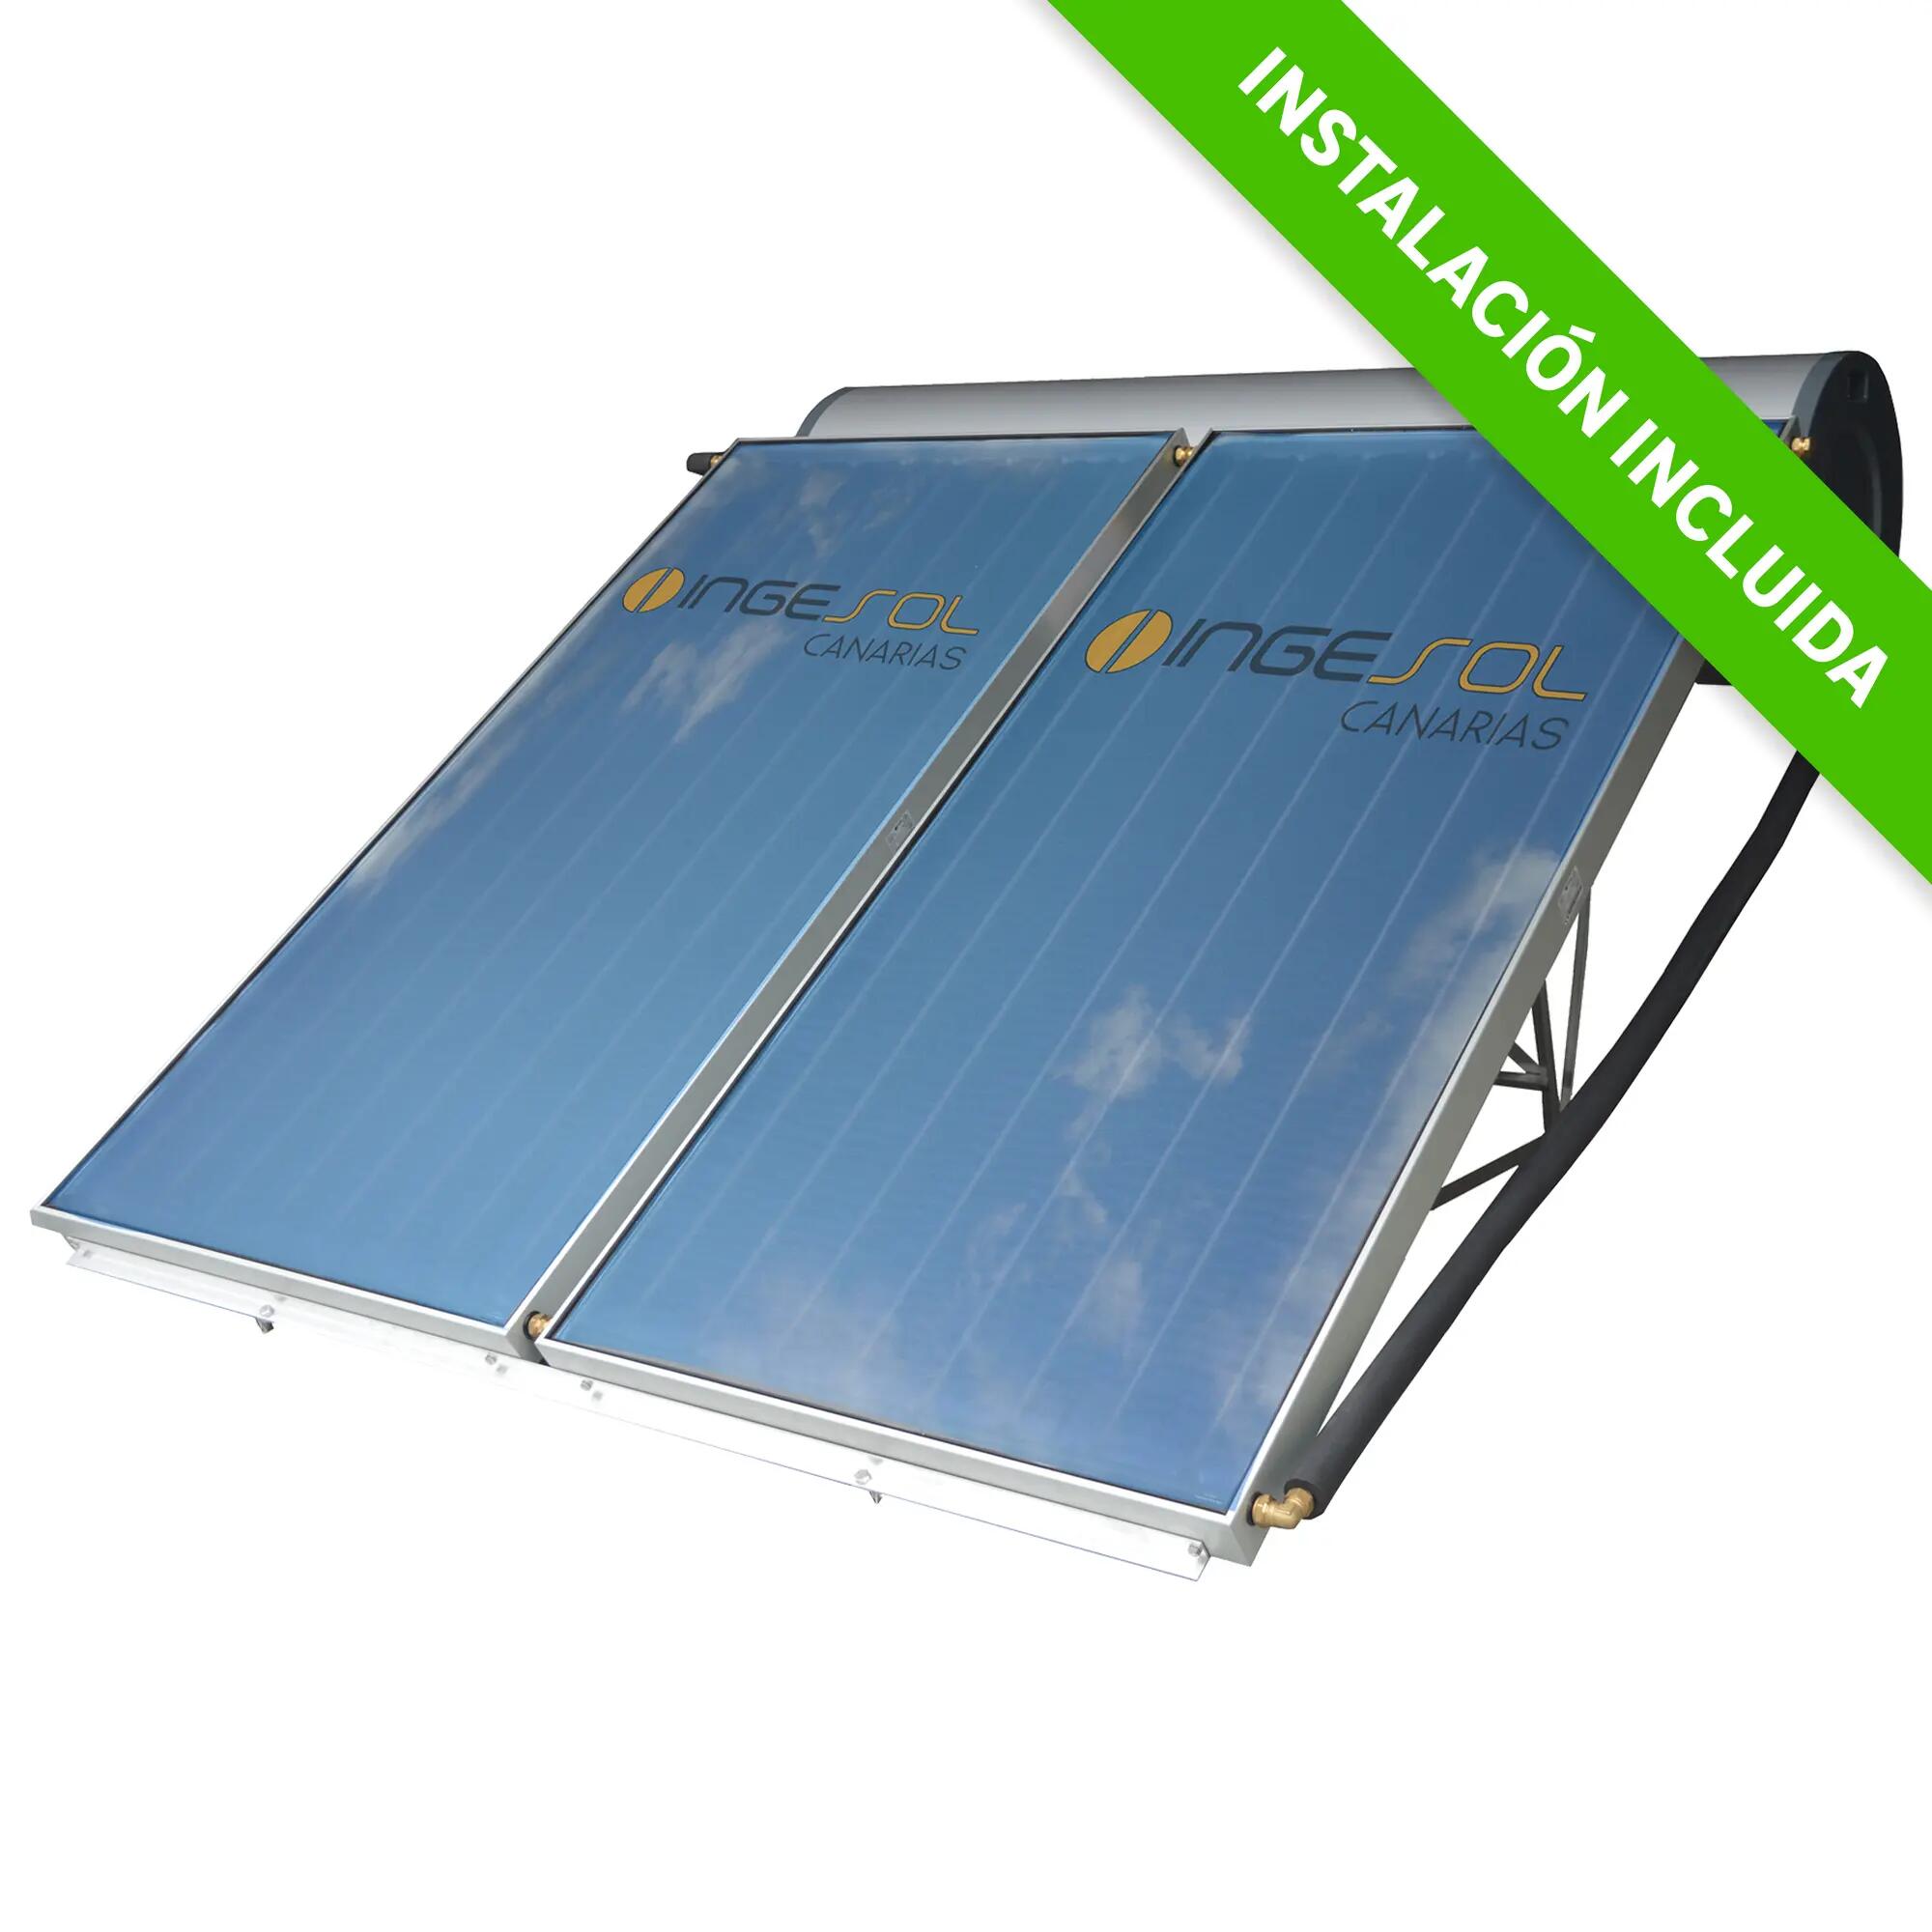 Equipo solar termosifón ingesol 300l instalación incluida excl. canarias